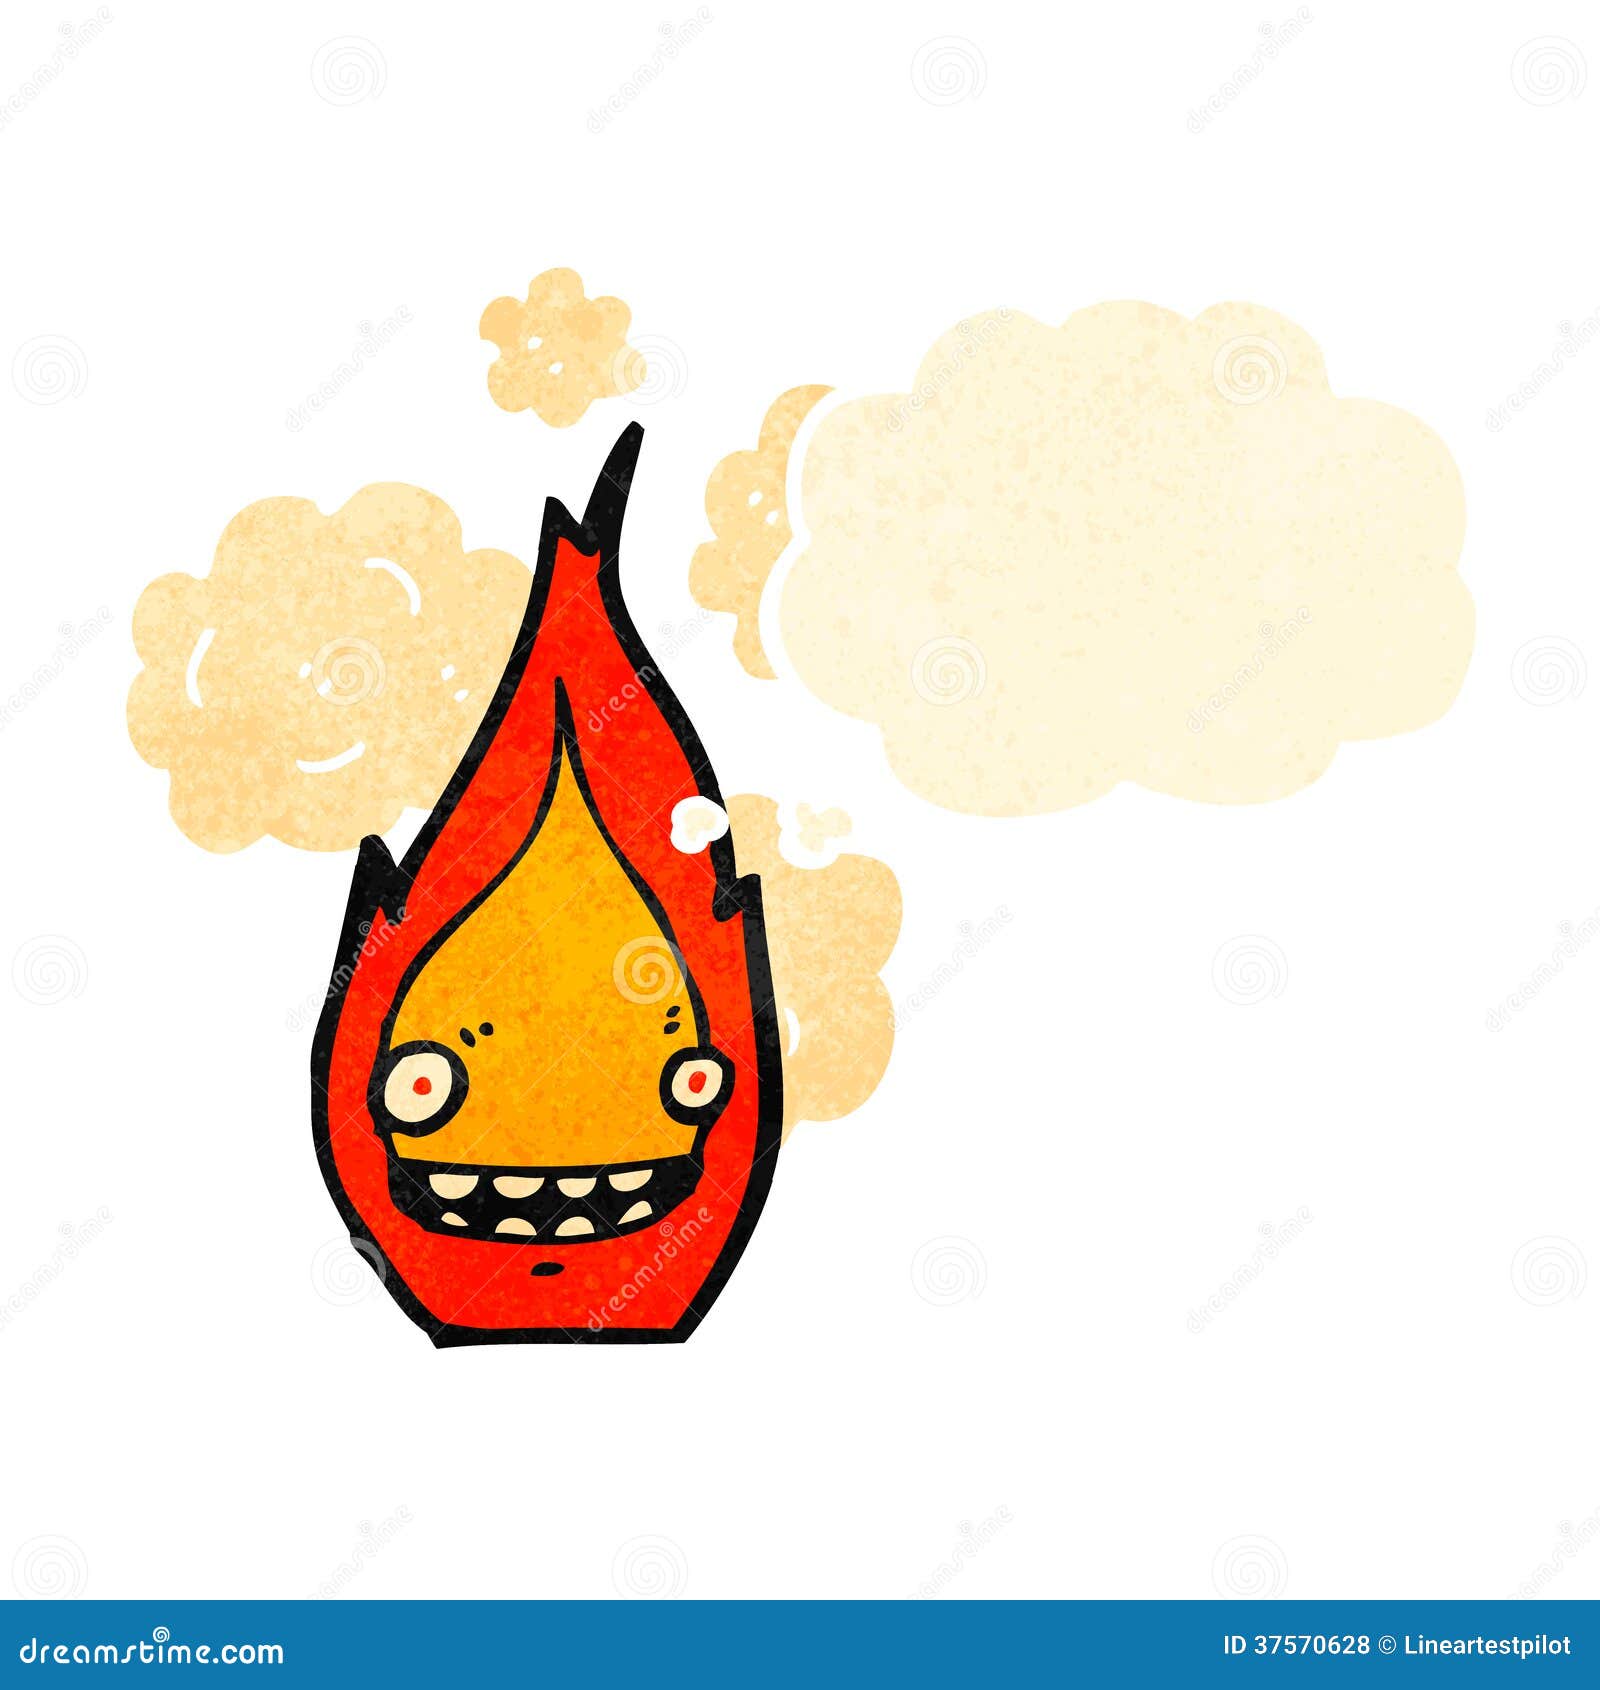 Cartoon fire symbol stock vector. Illustration of clip - 37570628